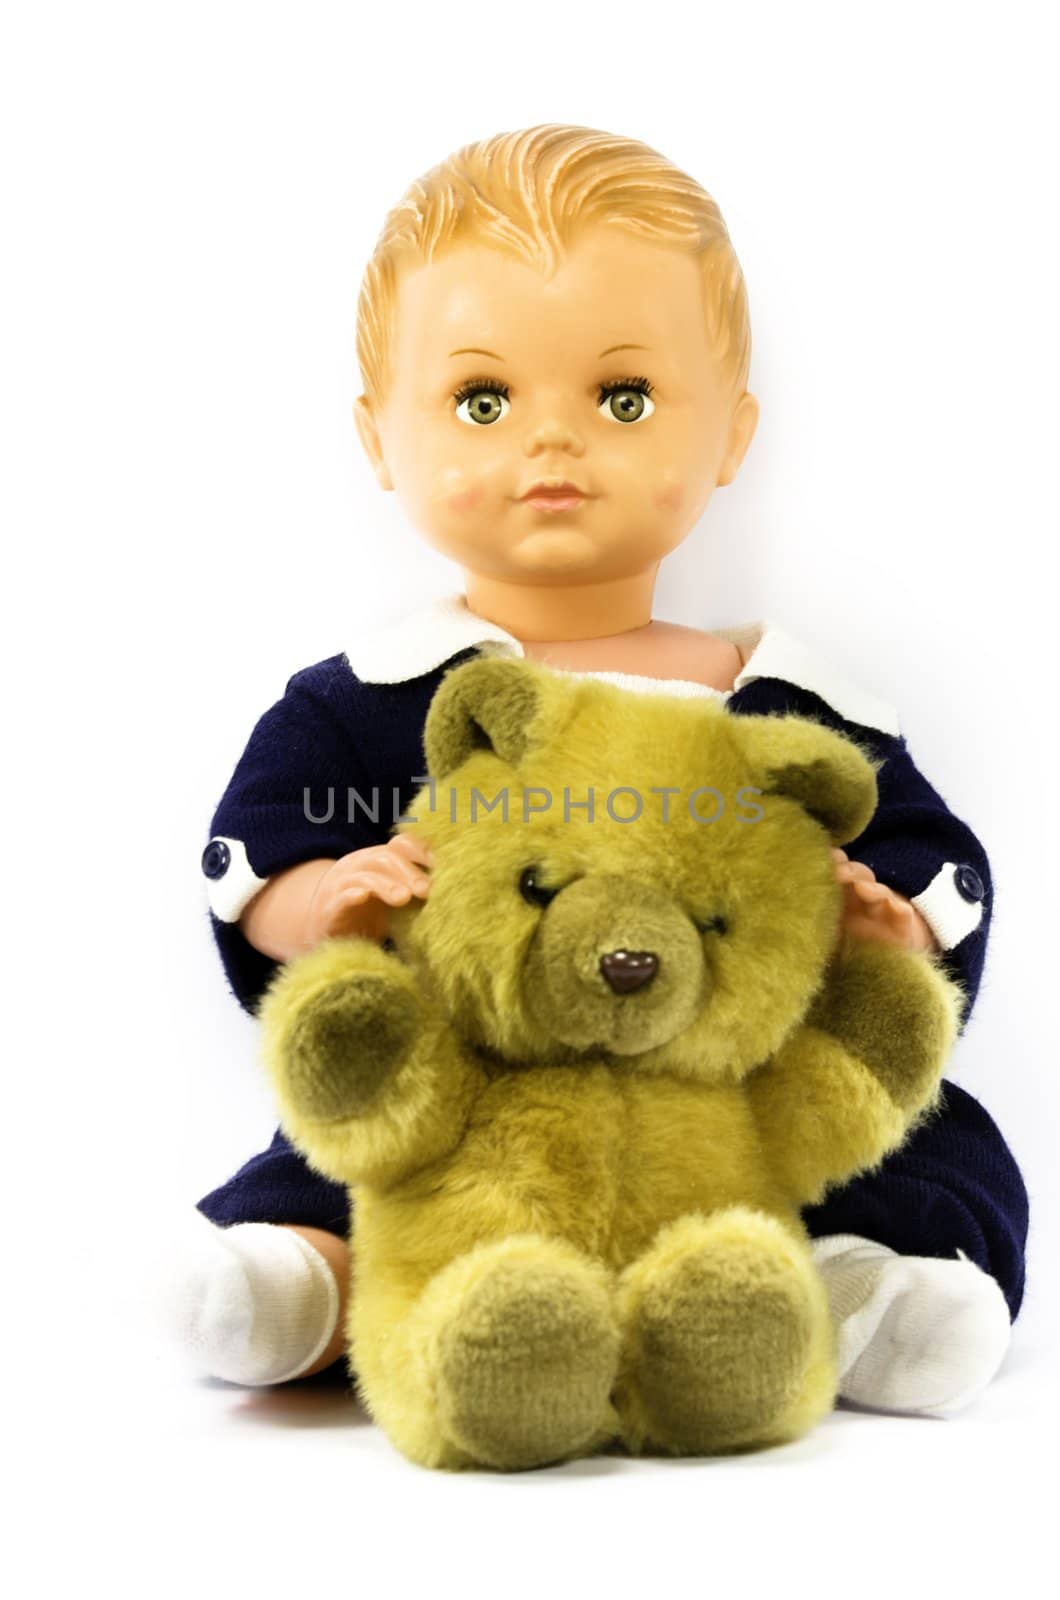 doll and teddy bear by gufoto